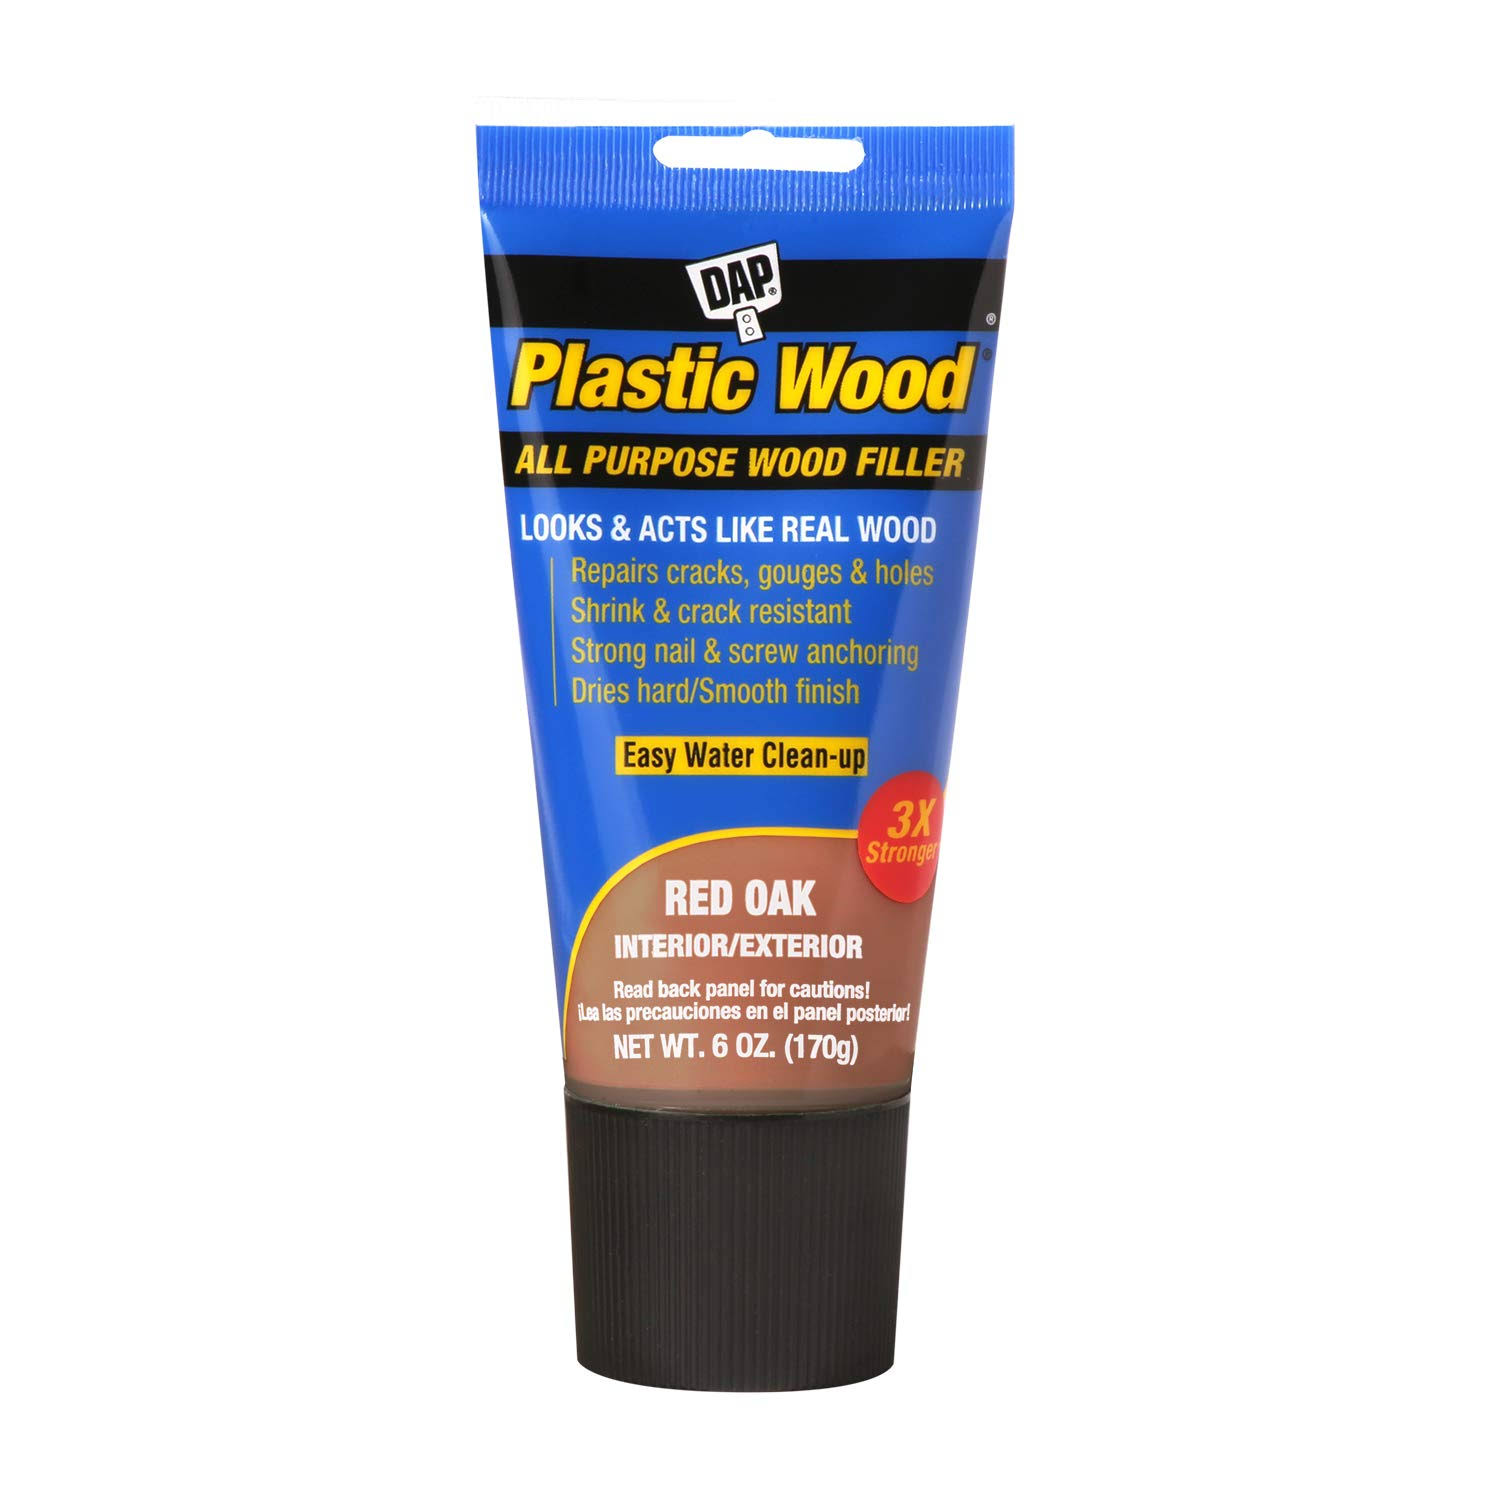 Dap 00583 Plastic Wood All Purpose Wood Filler - Red Oak, 6oz